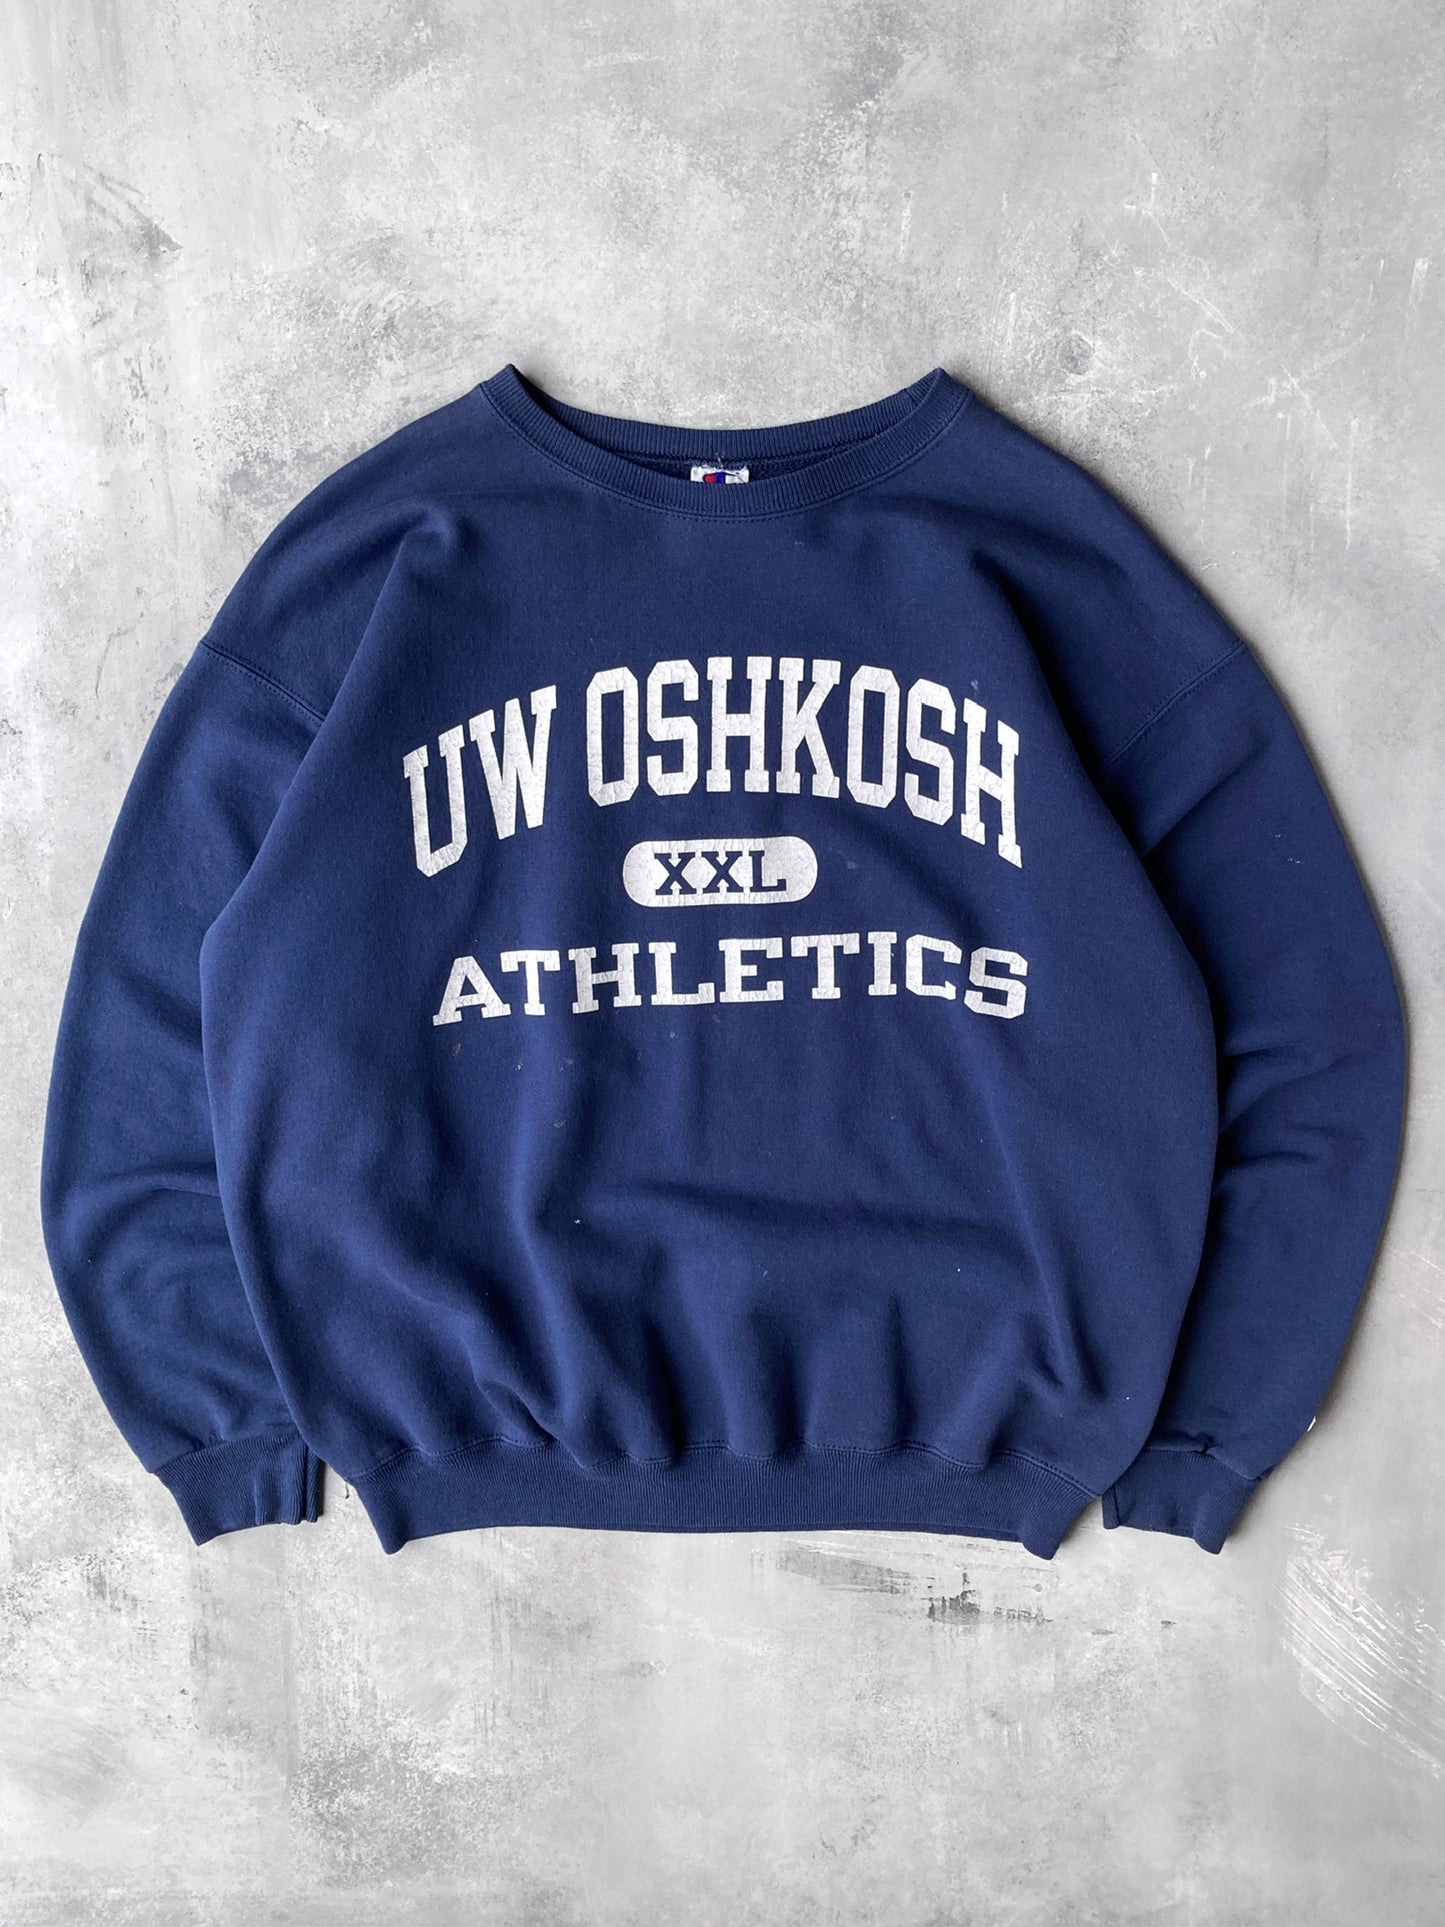 University of Wisconsin Oshkosh Sweatshirt 90's - Large